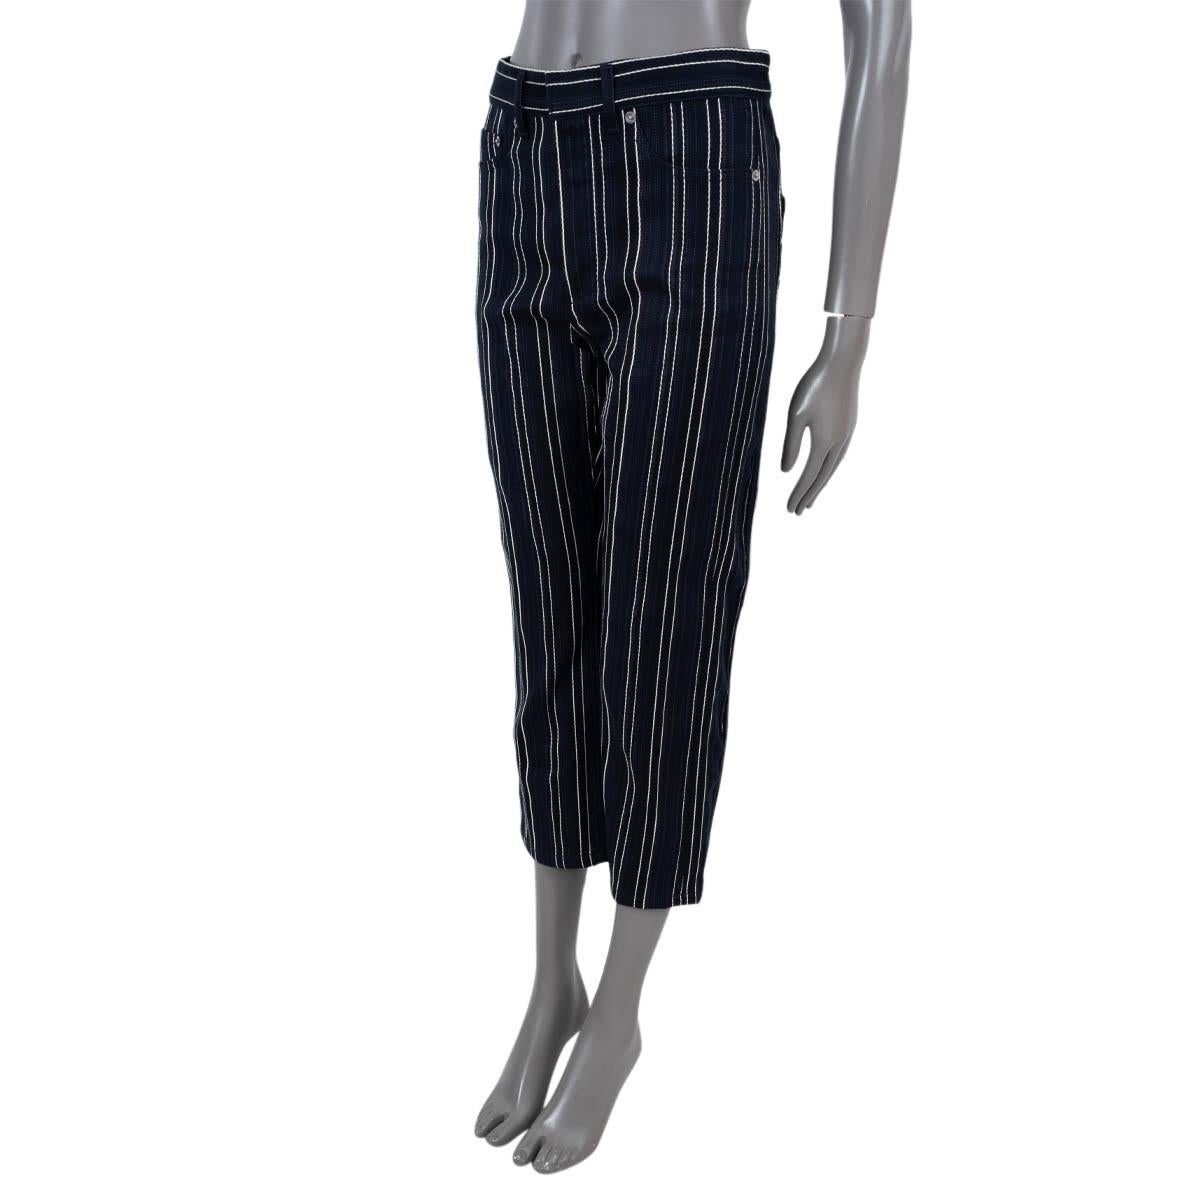 100% authentique Christian Dior jean cropped rayé en coton (100%) bleu marine, noir et crème. Il est doté de poches fendues sur le devant et au dos et de passants de ceinture. S'ouvre par une fermeture à glissière et un crochet sur le devant. Ils